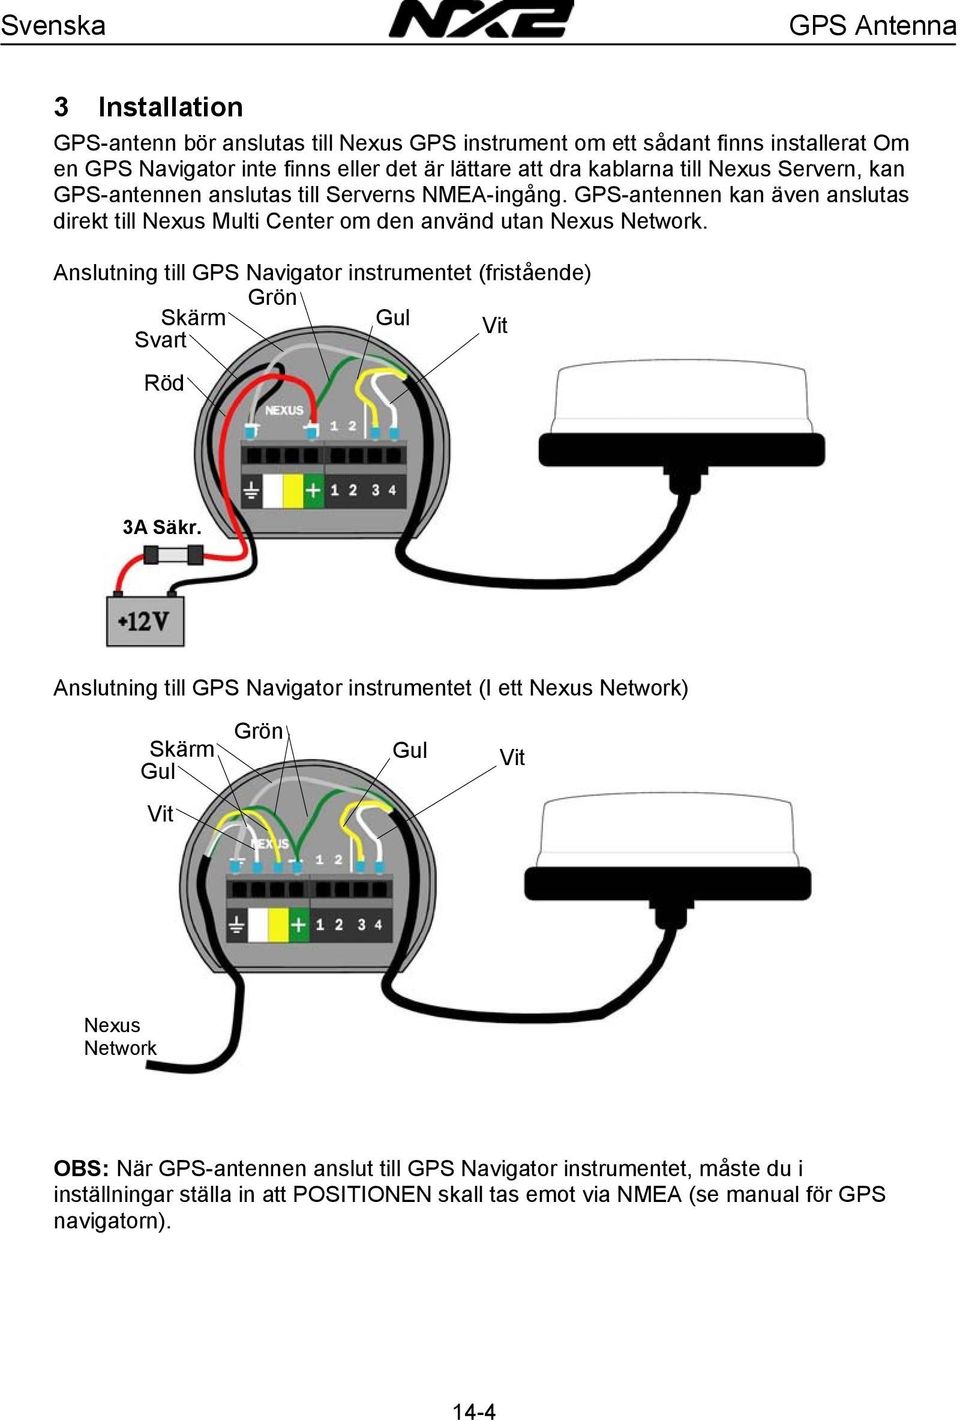 GPS-antennen kan även anslutas direkt till Nexus Multi Center om den använd utan Nexus Network.